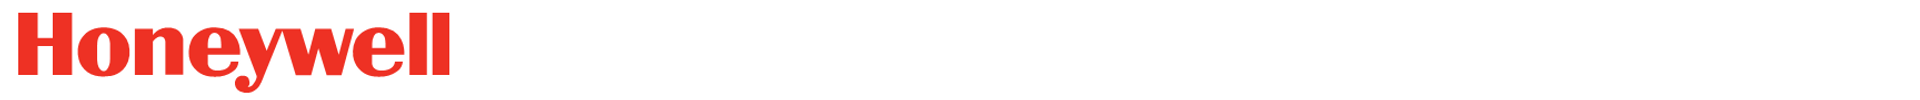 alt_text=logo of Honeywell